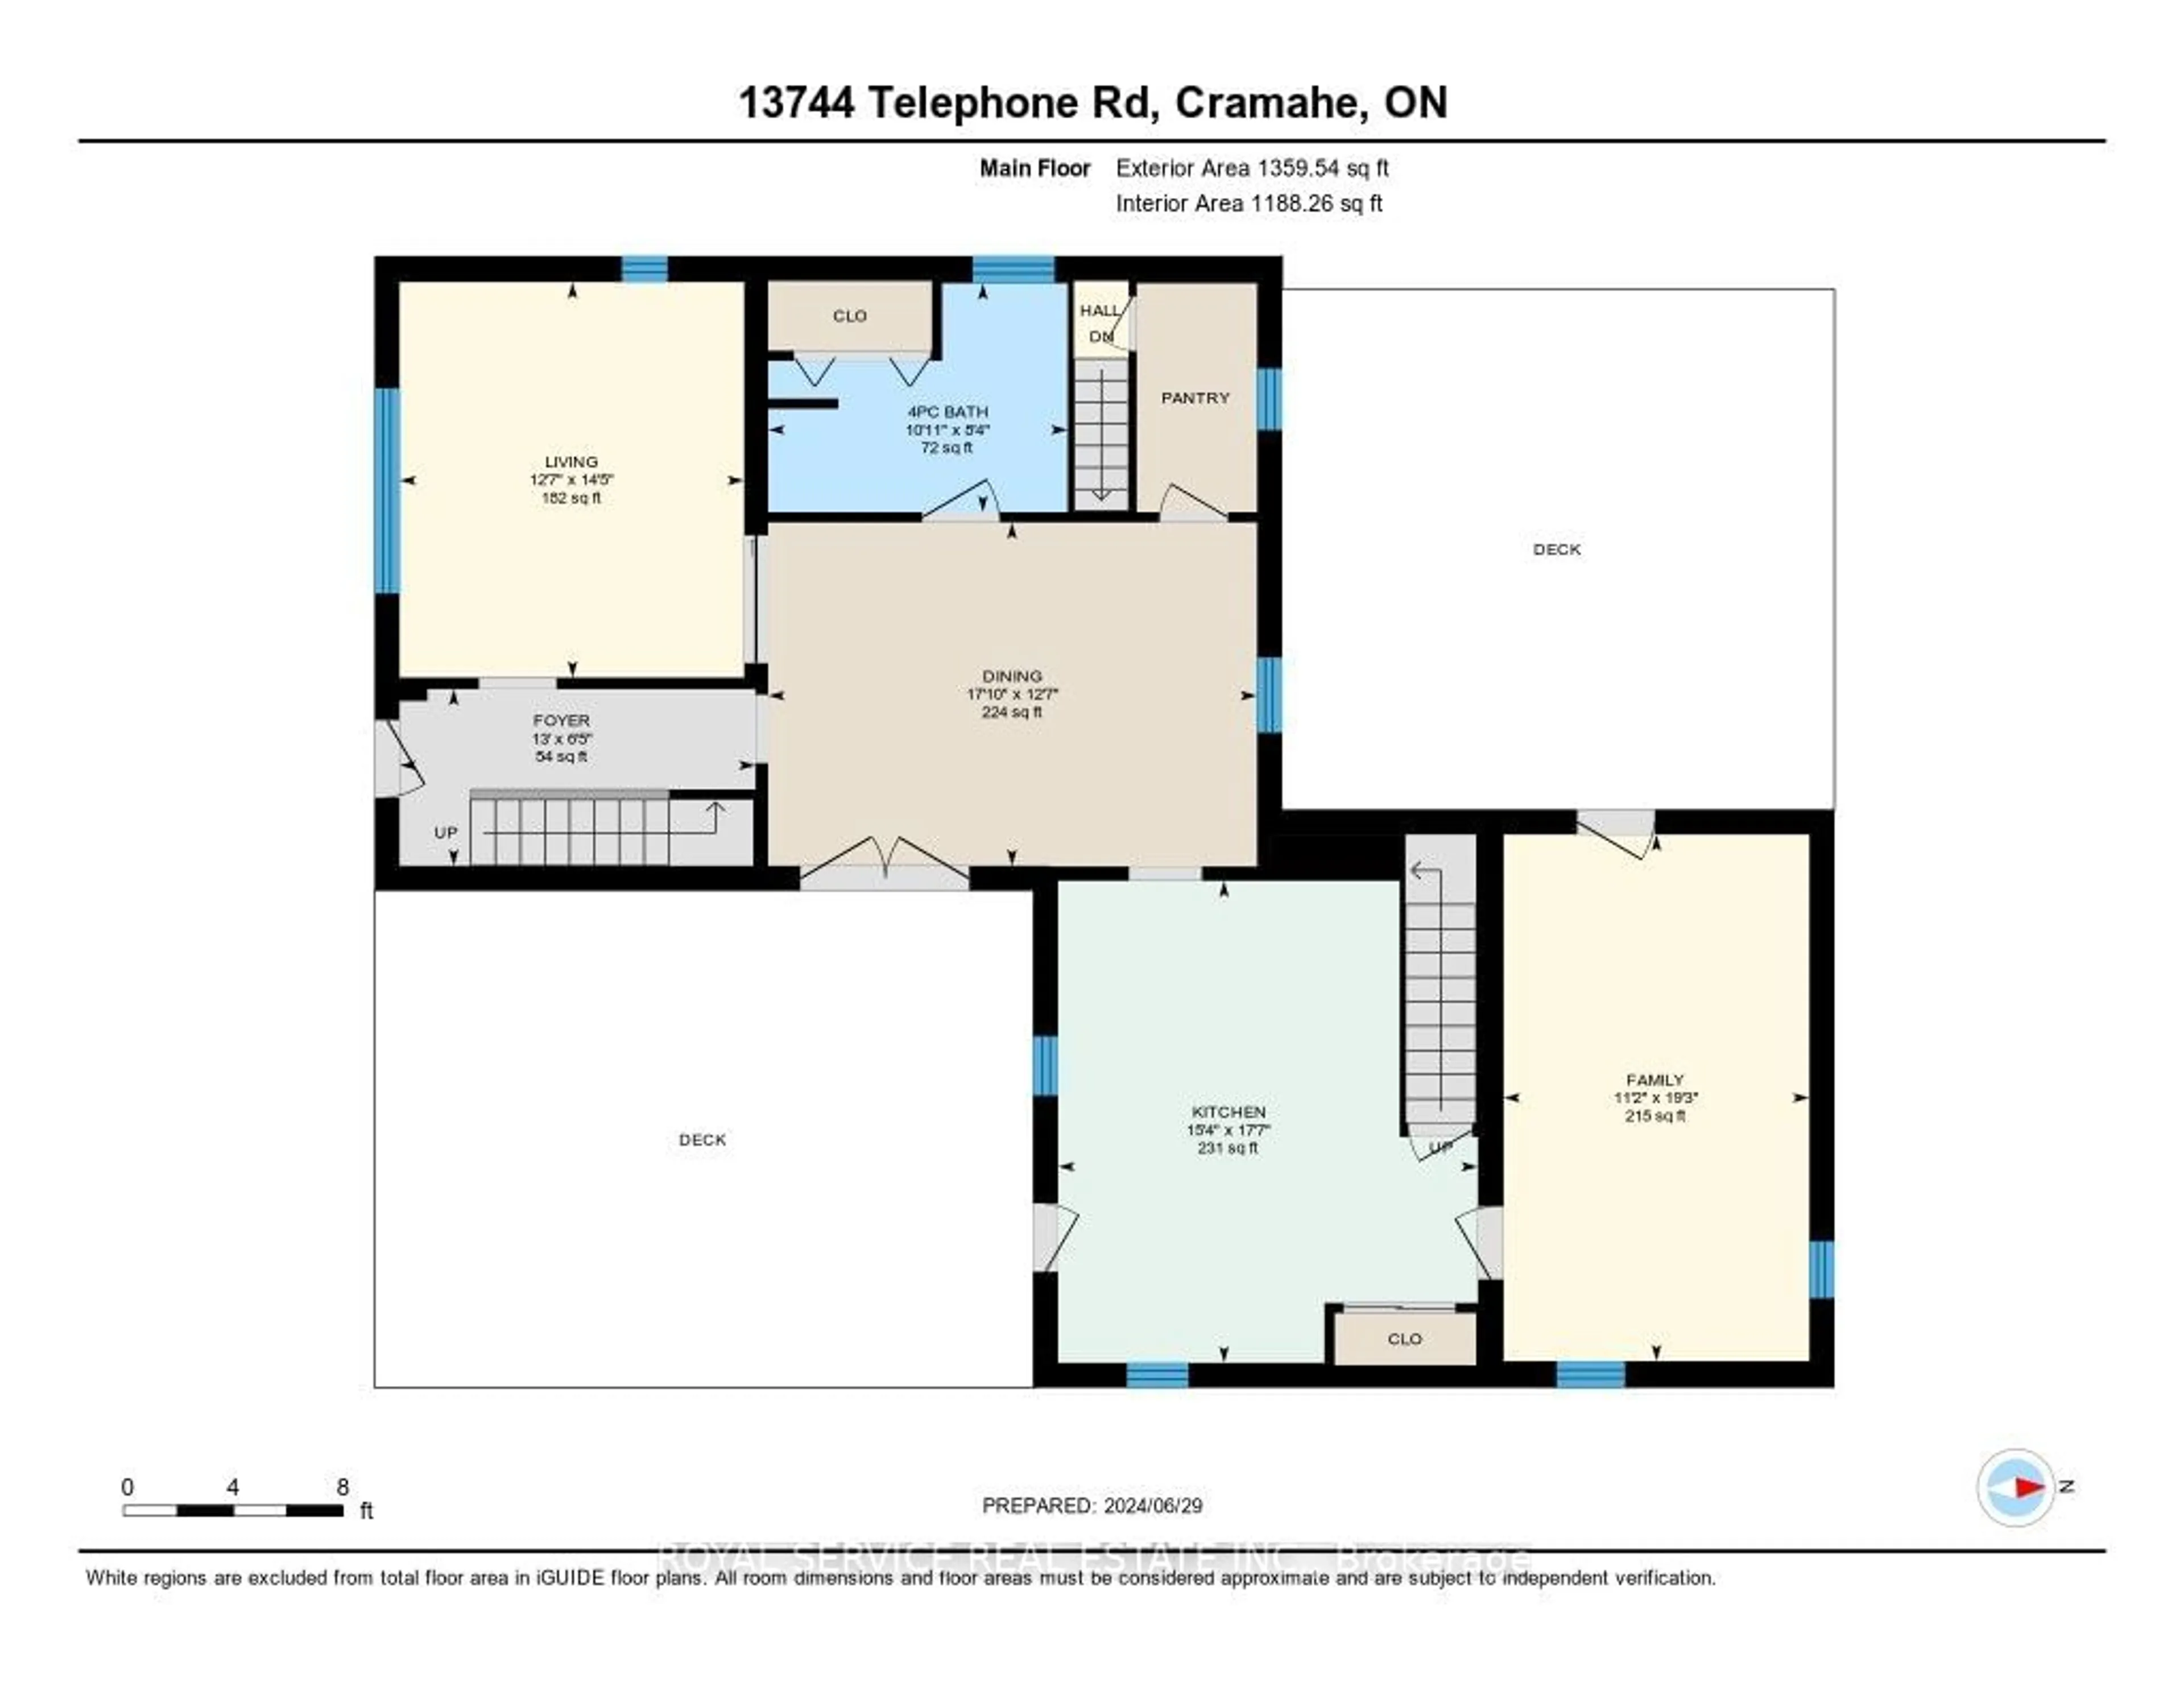 Floor plan for 13744 Telephone Rd, Cramahe Ontario K0K 1S0